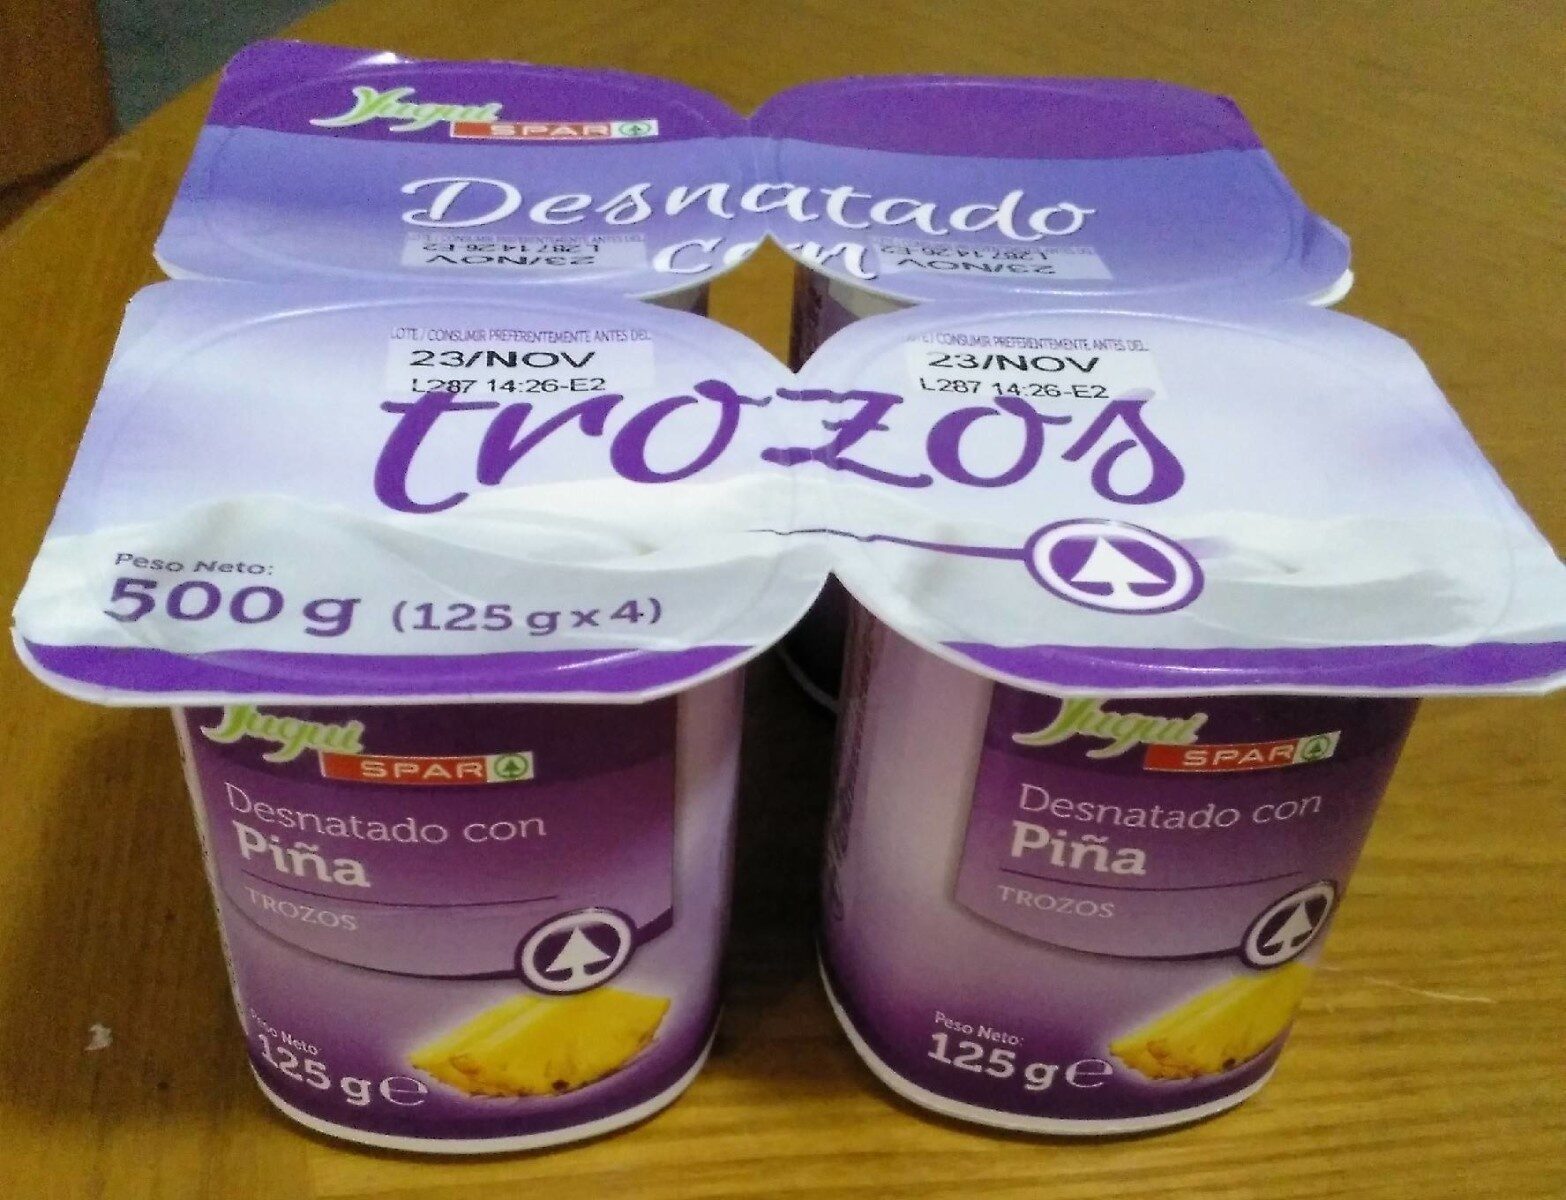 Yogur desnatado con piña (trozos) - Producte - es